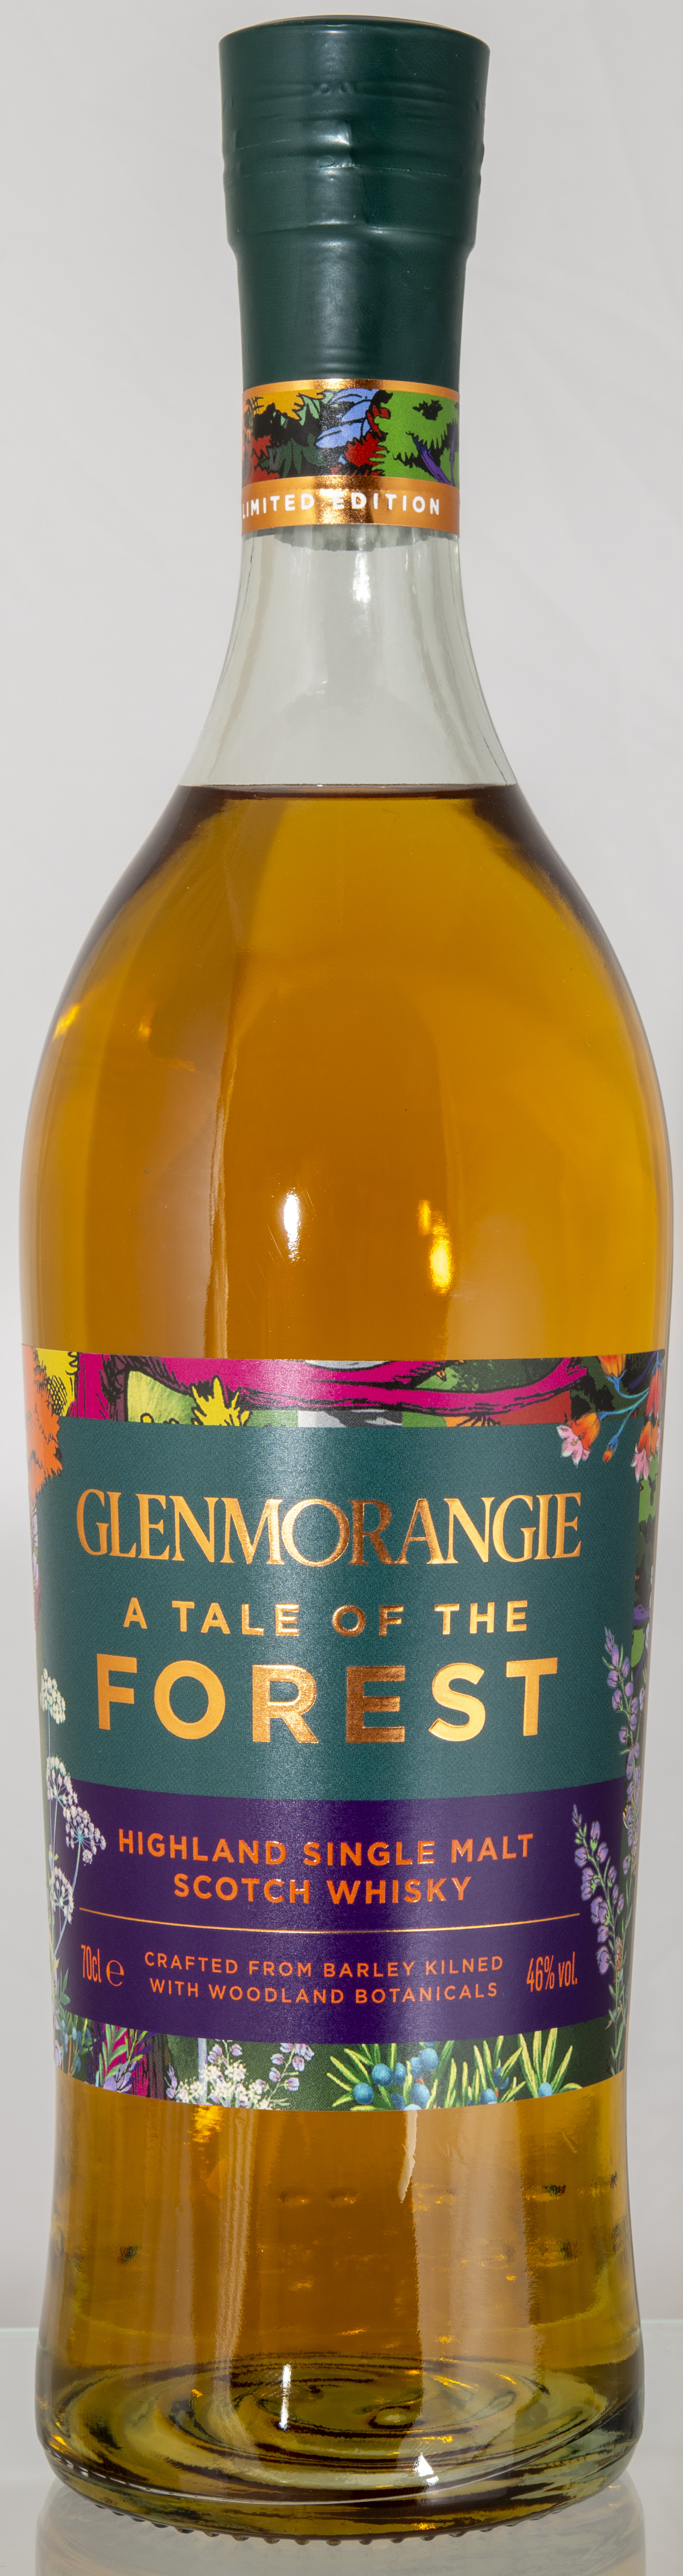 Billede: D85_8294 - Glenmorangie A Tale of Forest - bottle front.jpg